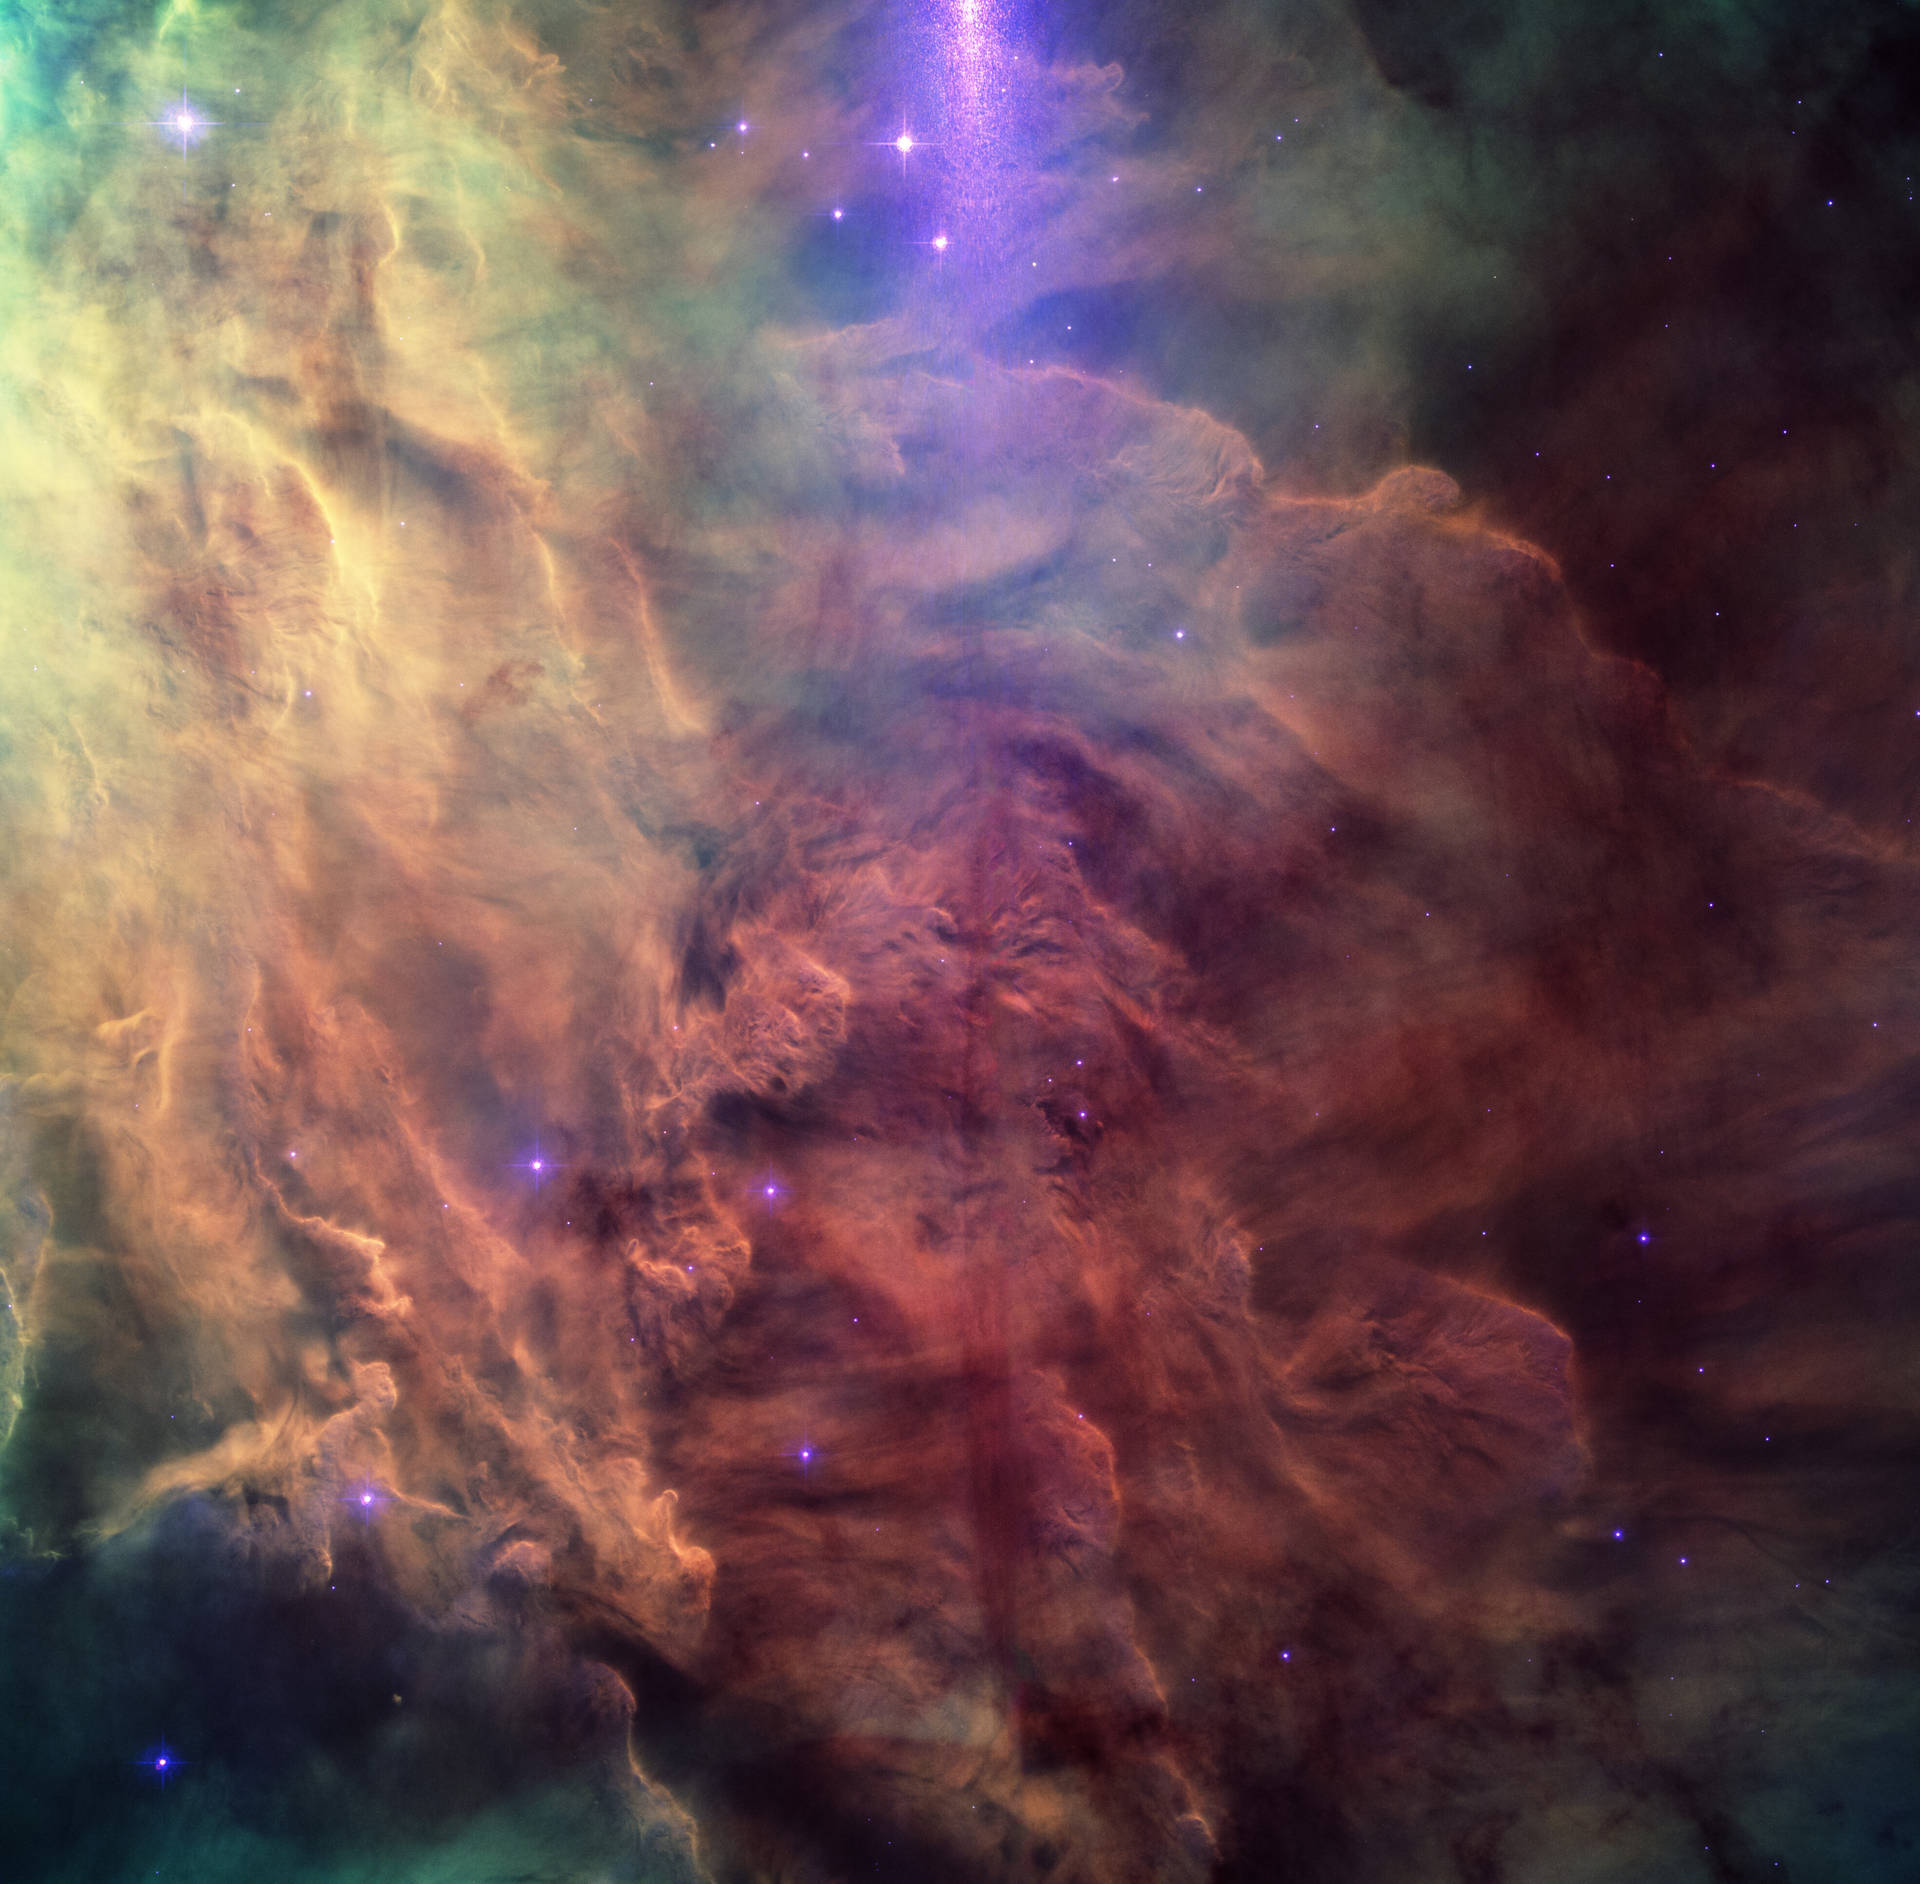 Nebula 3940X3867 Wallpaper and Background Image